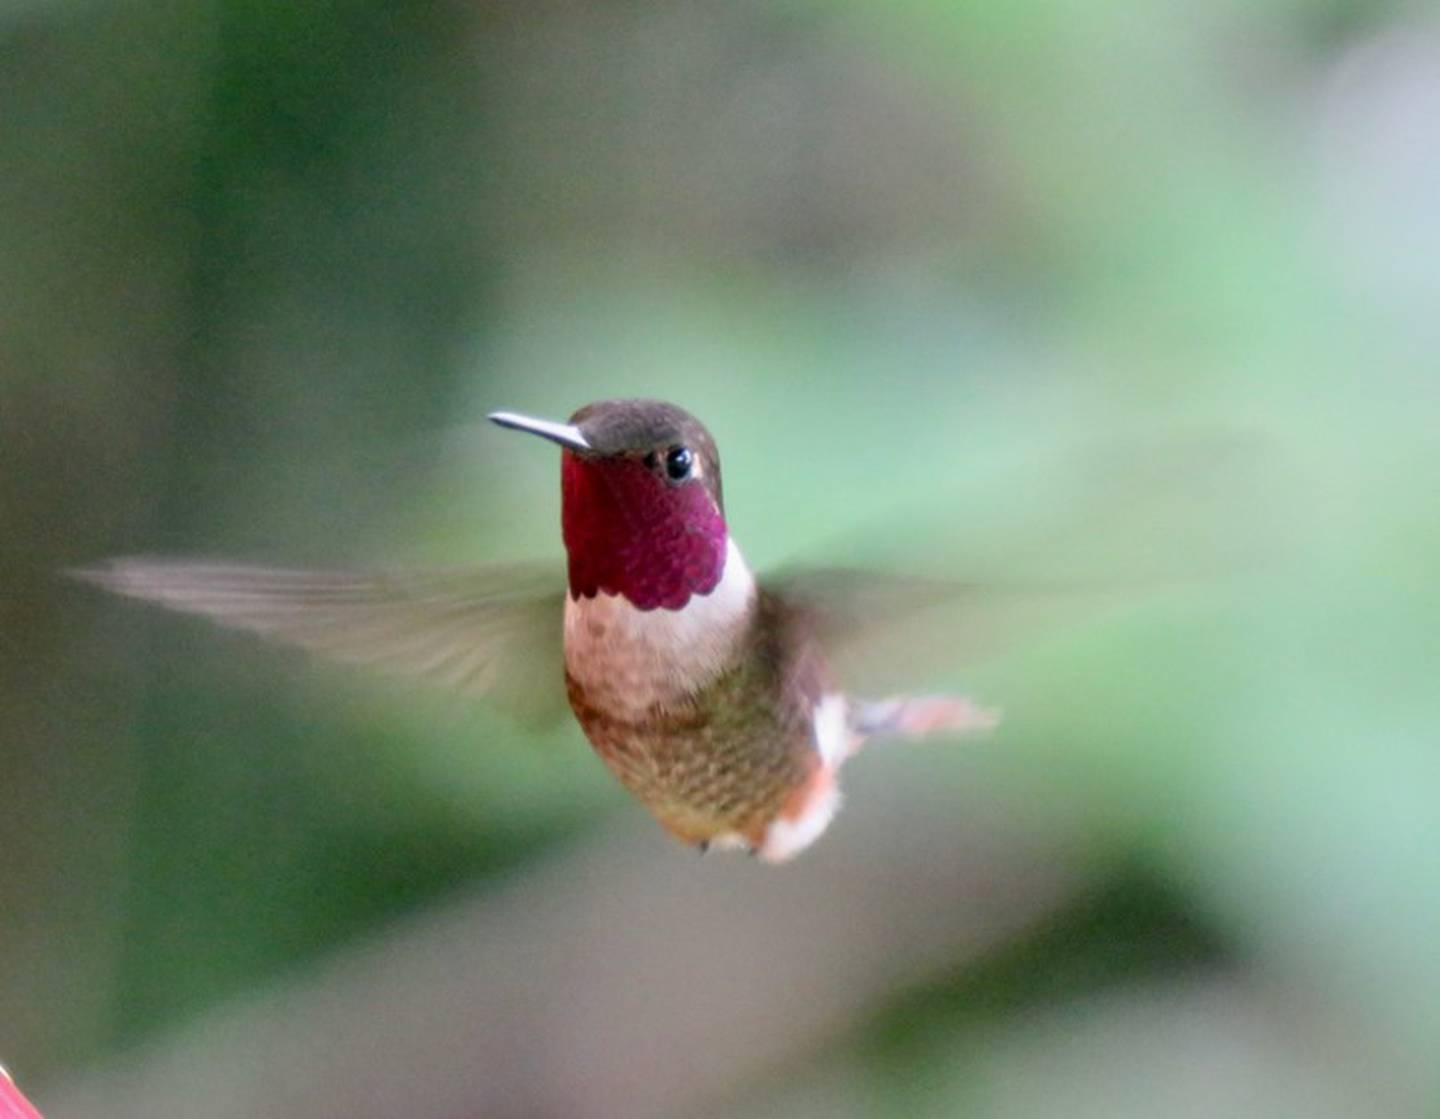 El colibrí magenta (Philodice bryantae) es un ave endémica de Costa Rica y Panamá, solo ahí se ve. 

Fotografía: Barbara Blevins.